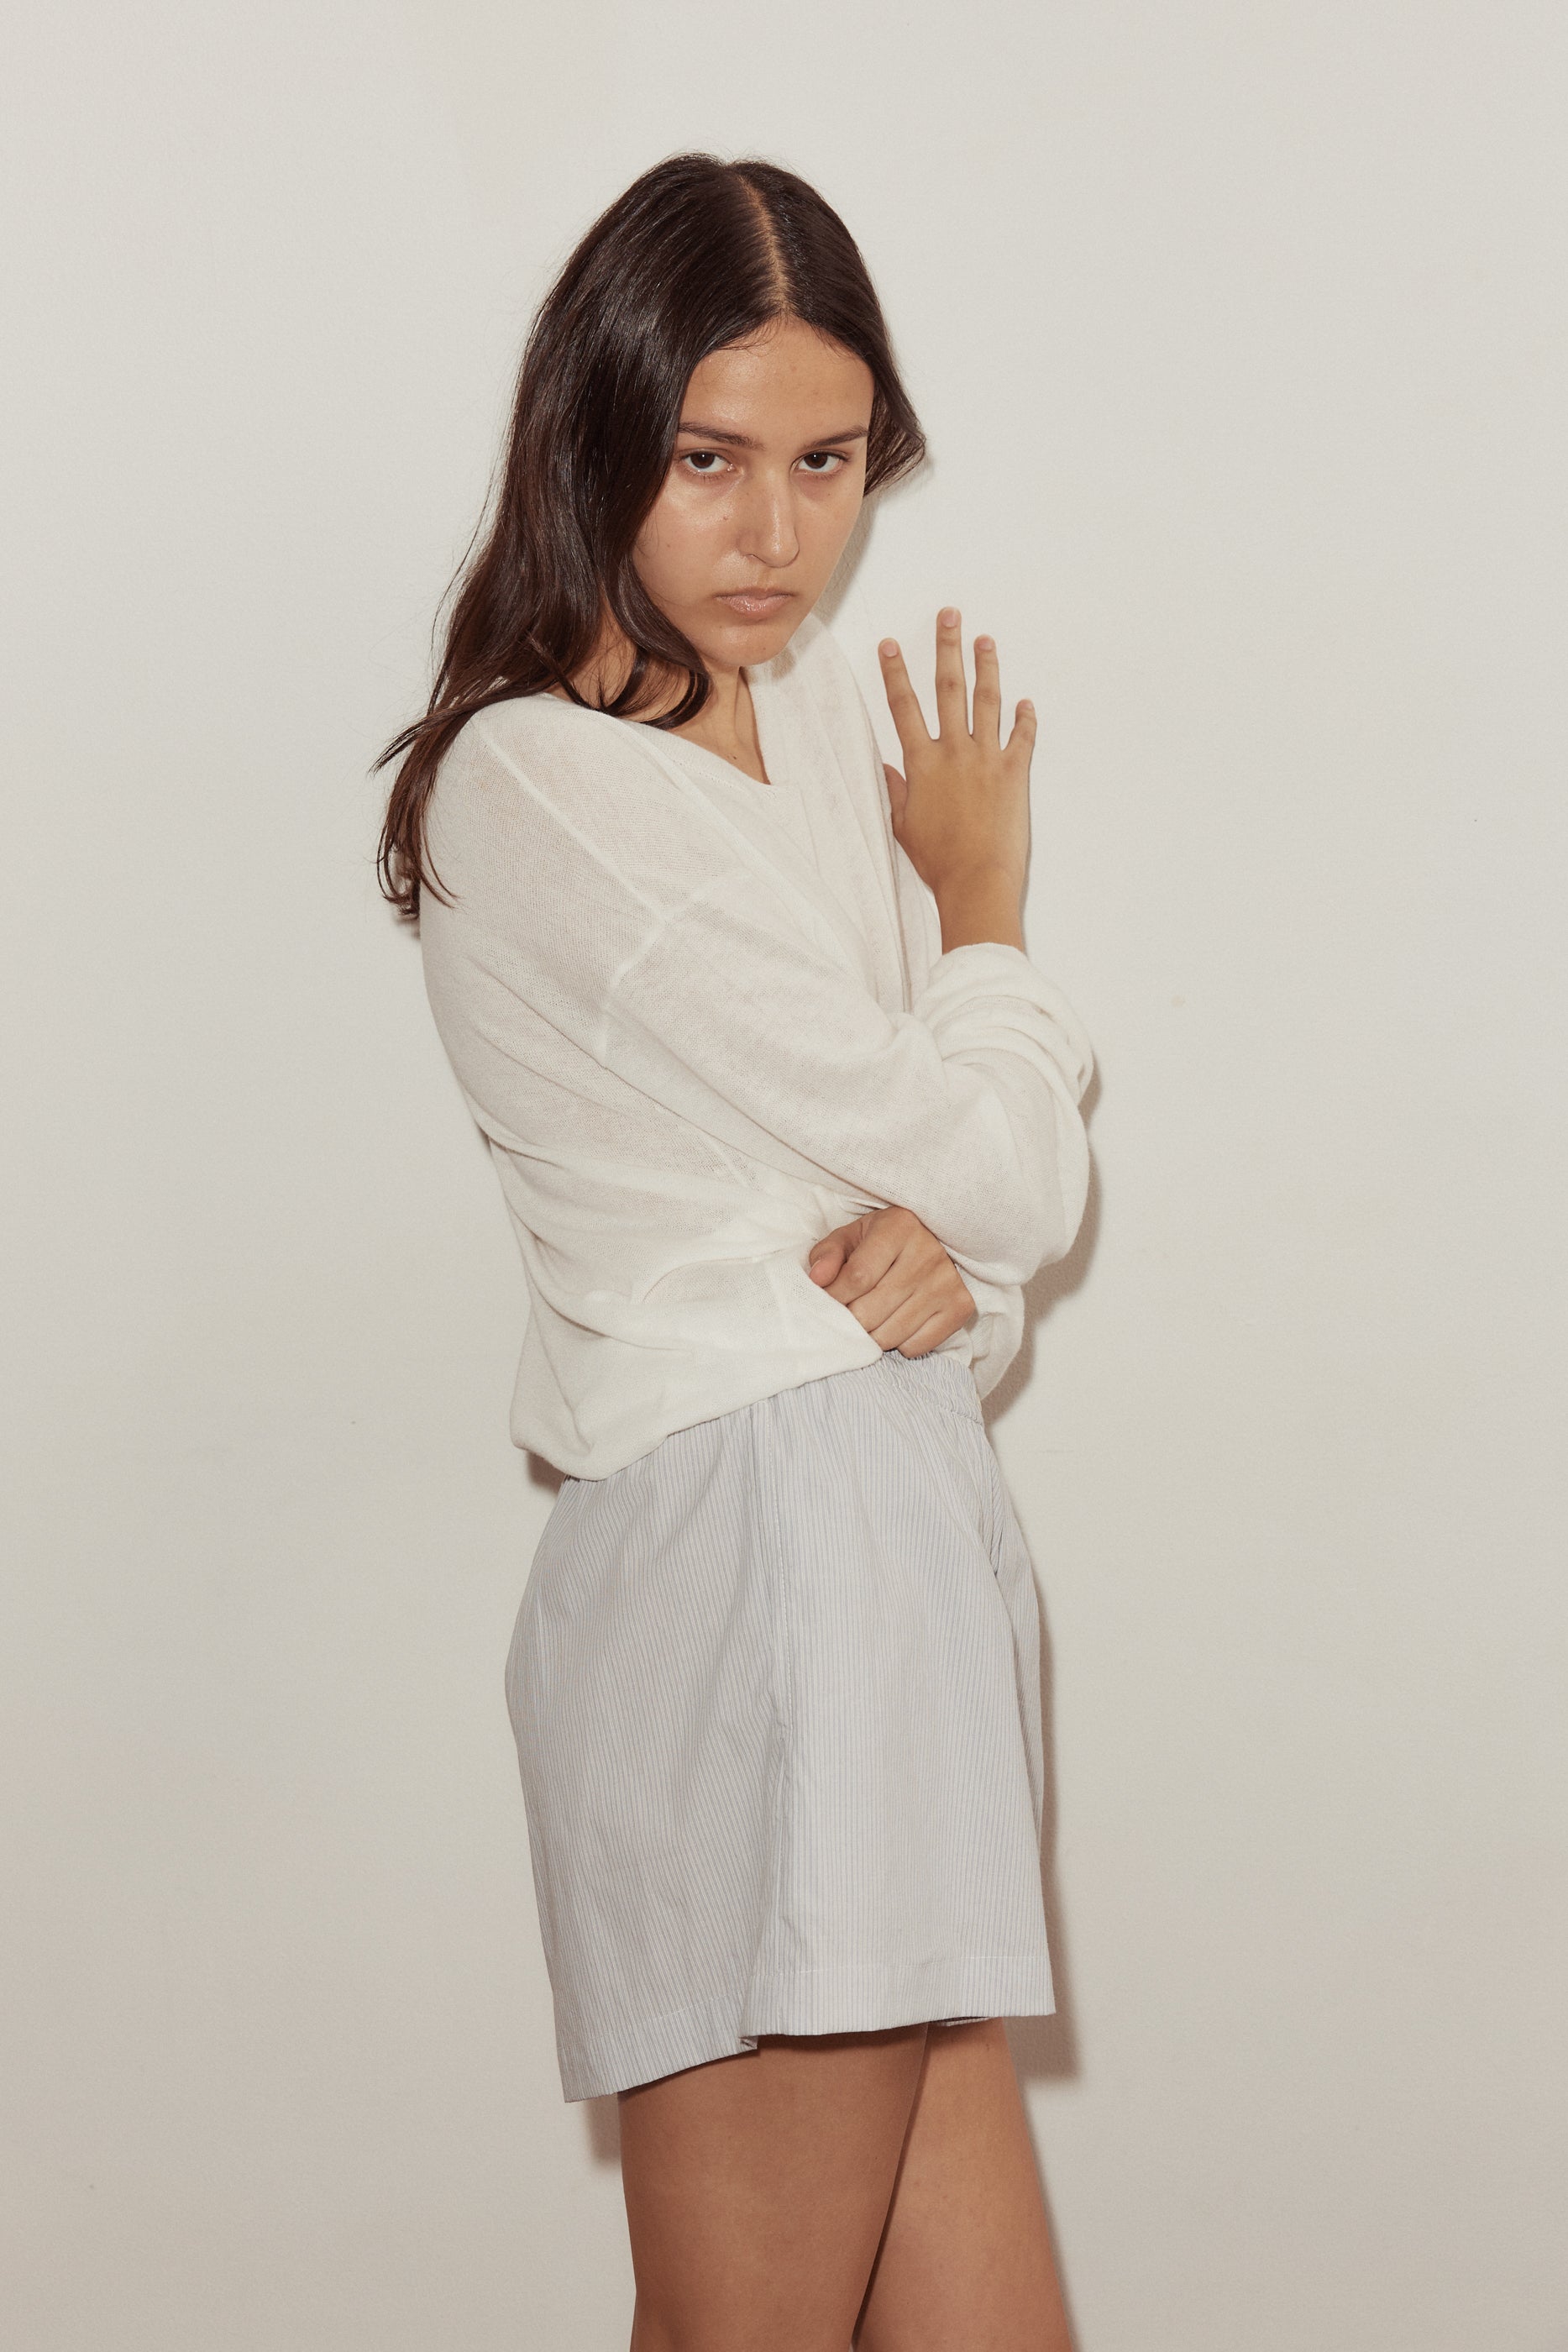 Female model wearing The Boxer - Dream Stripe by Deiji Studios against plain background